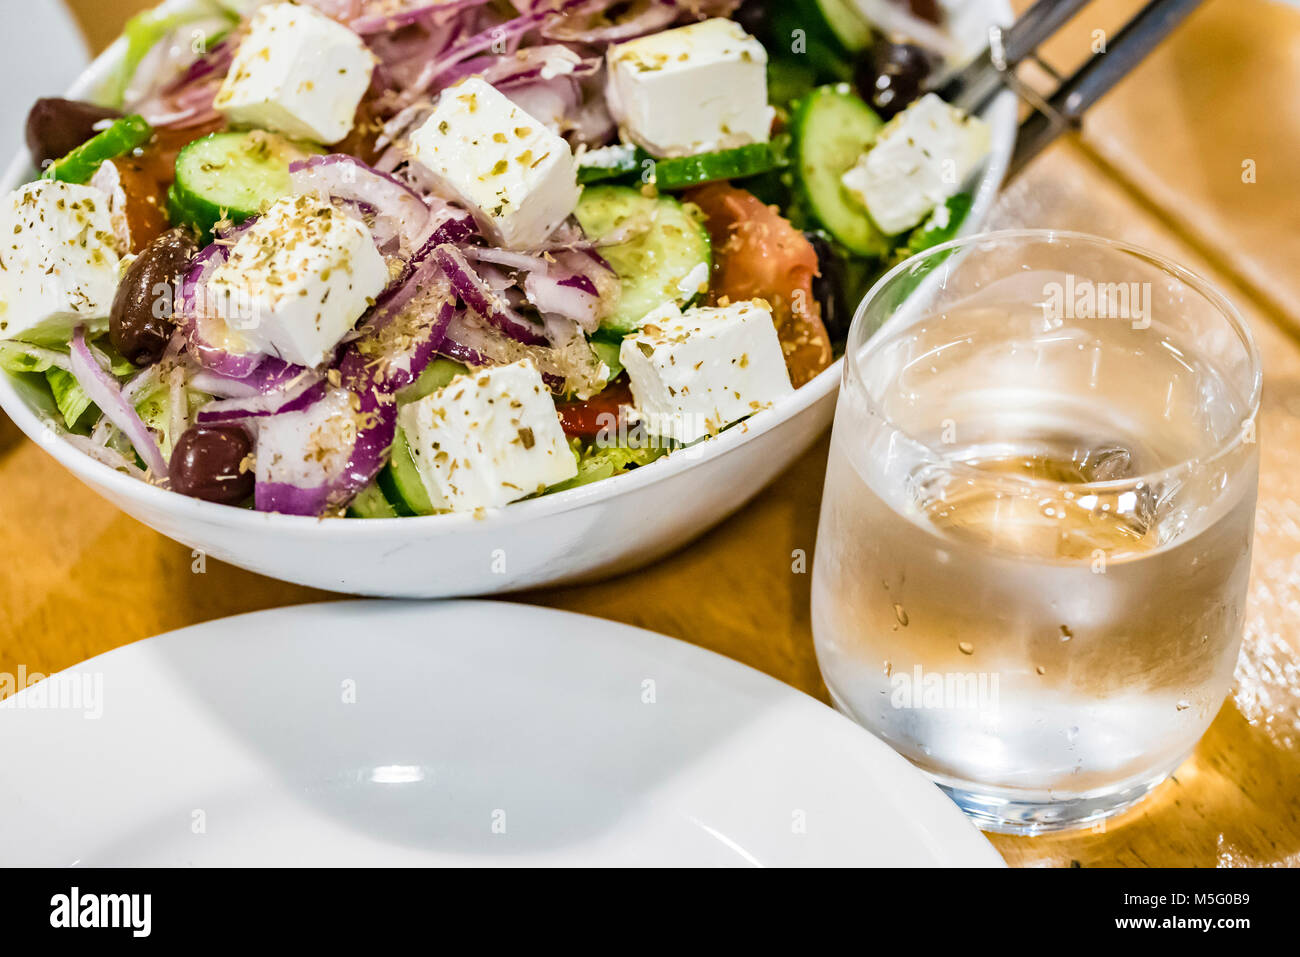 Frischer Salat, Teller, Glas Wasser auf dem Tisch, Nahaufnahme. Griechischer Salat mit Feta Käse, gesundes Essen Konzept. Stockfoto